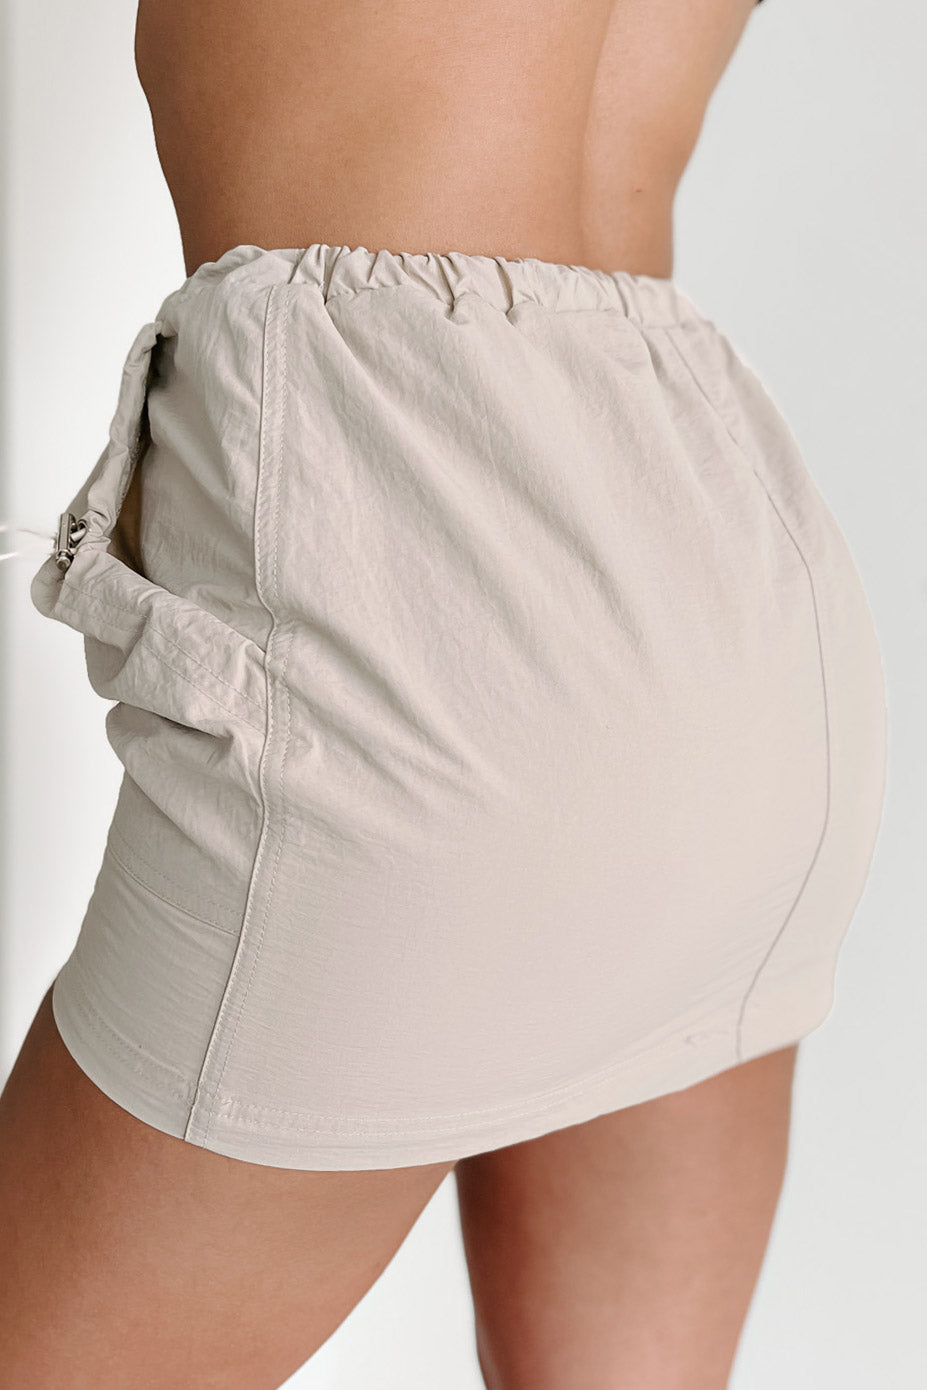 Short Fuse Nylon Mini Skirt With Drawstring Toggles (Taupe) - NanaMacs